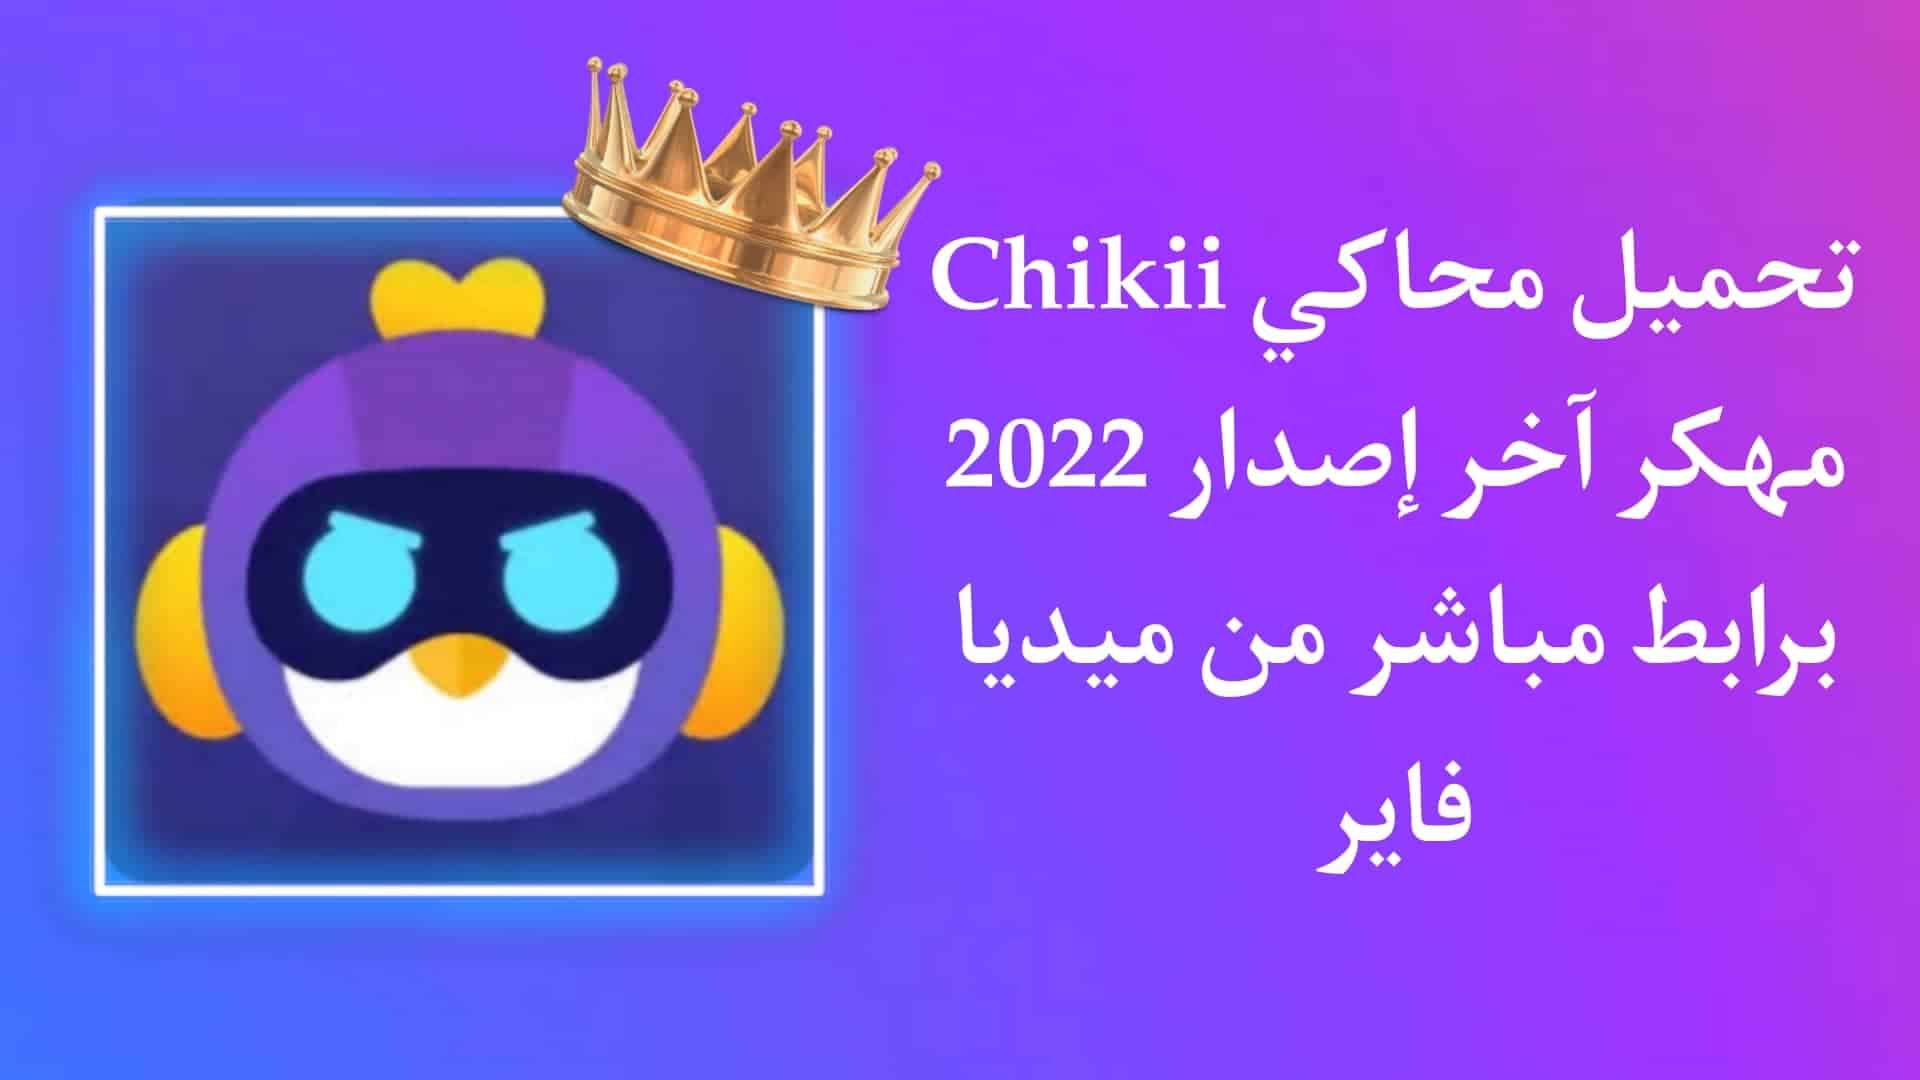 تحميل تطبيق Chikii Apk مهكر للاندرويد اخر اصدار 2022 مجانا